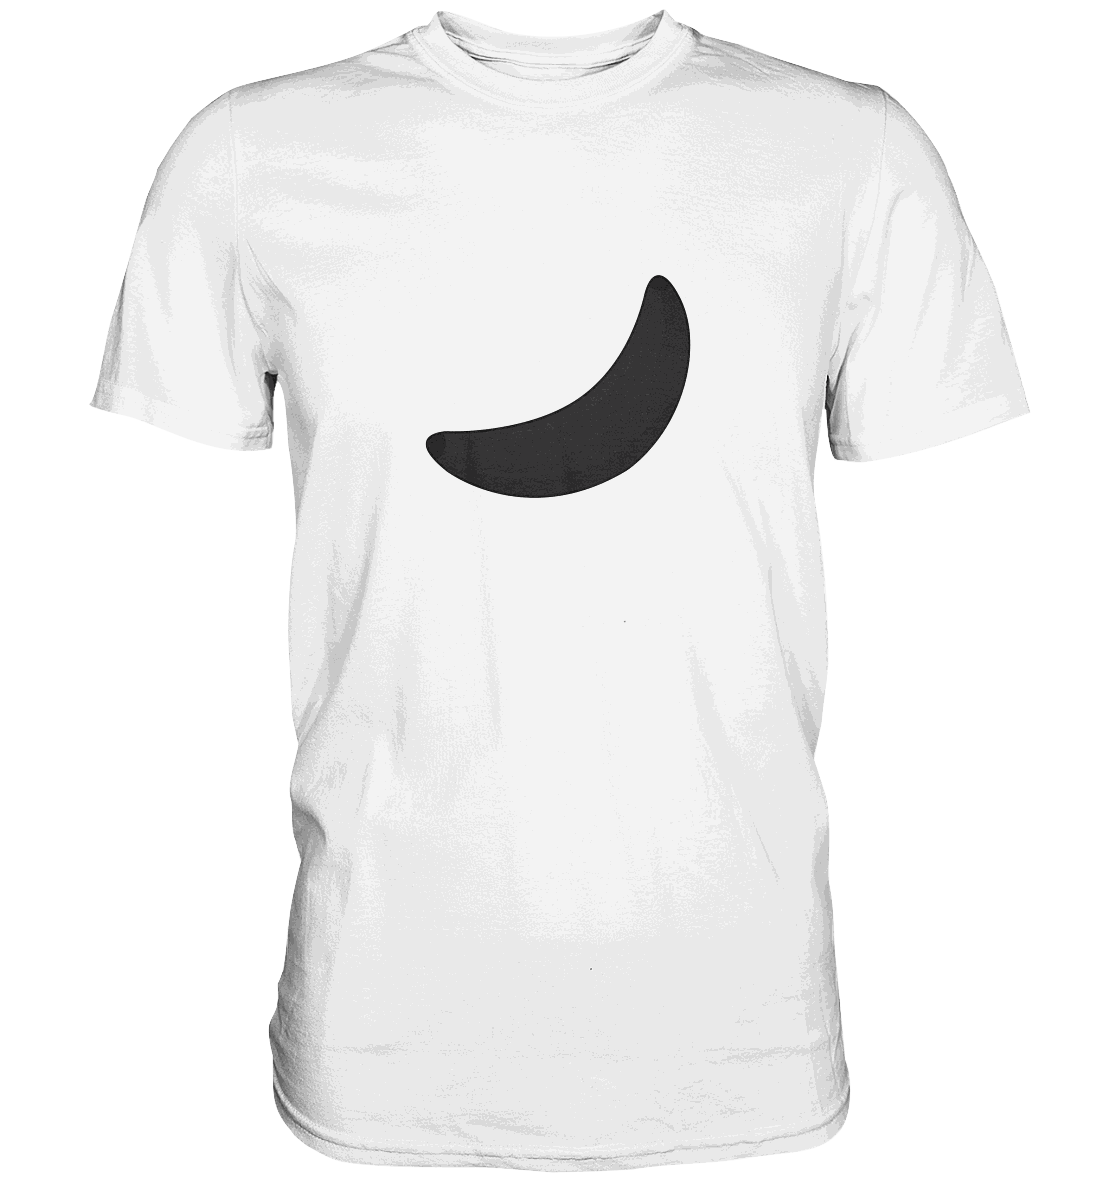 Fruit Shirt - Black Banana